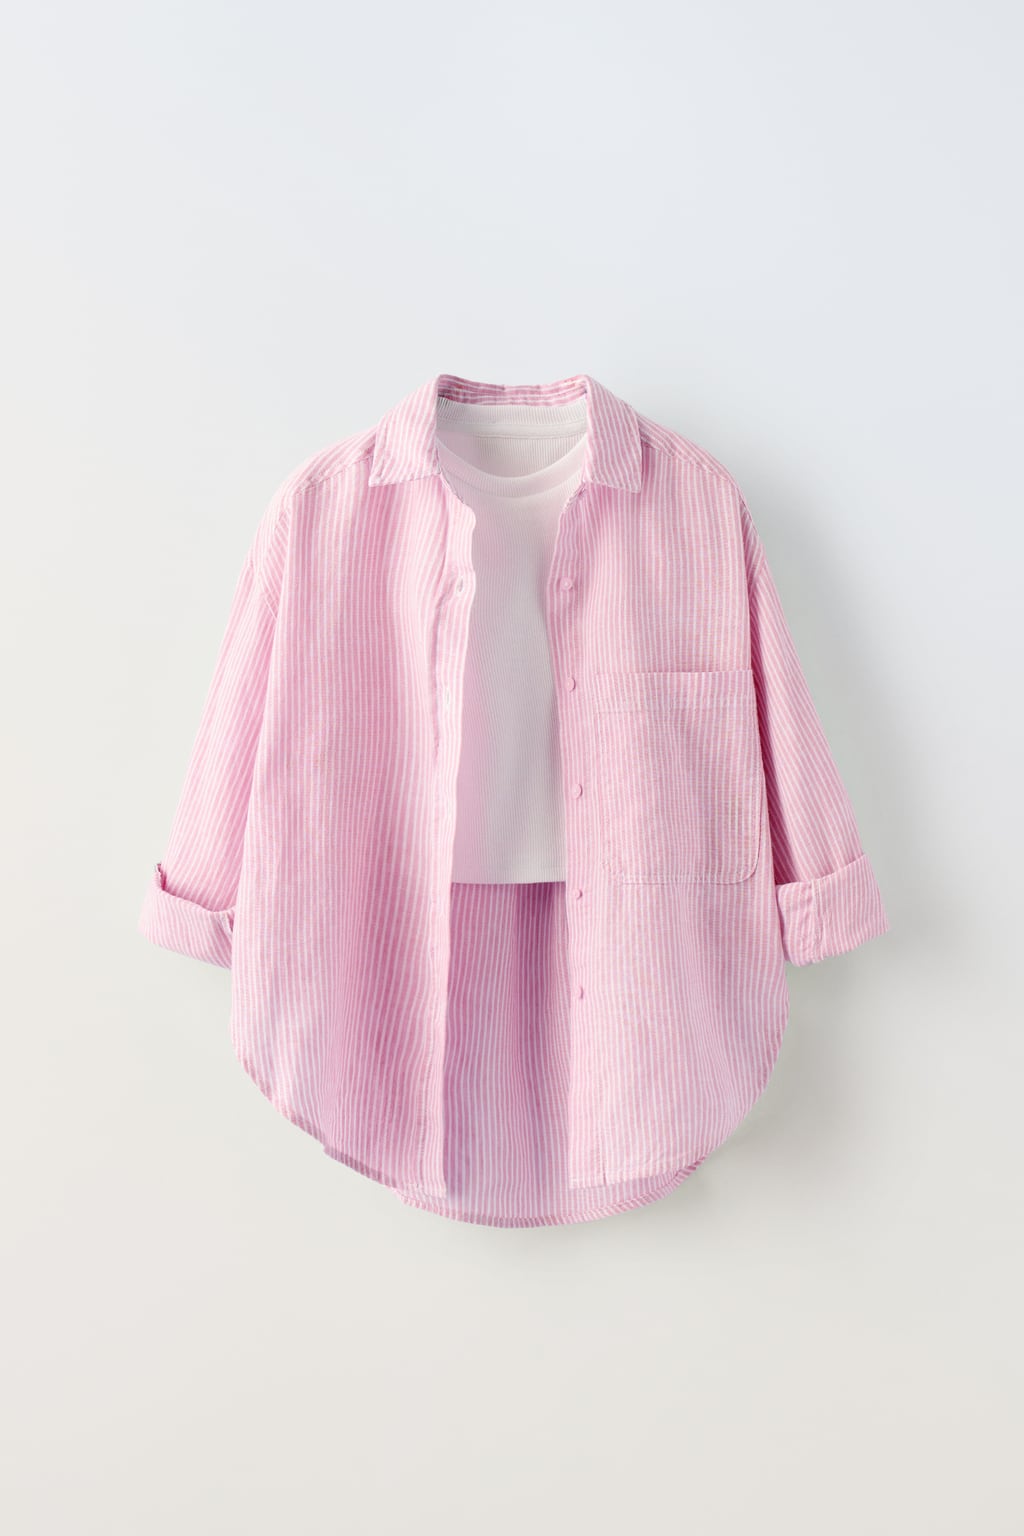 Рубашка в полоску с контрастным верхом в ребруску ZARA, розовый рубашка в полоску с контрастным верхом в ребруску zara розовый